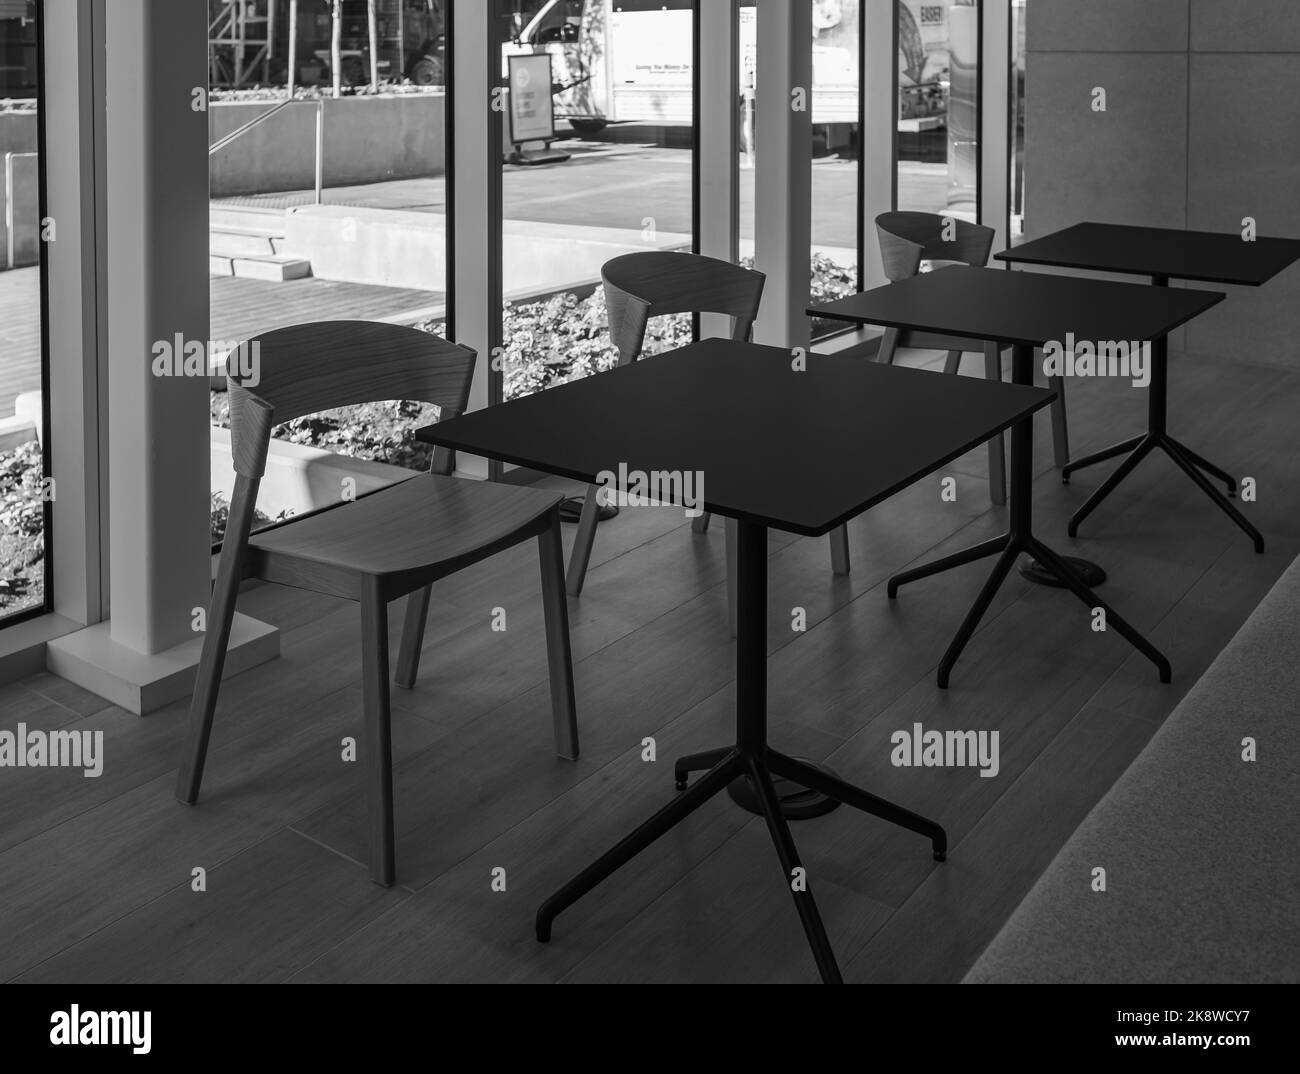 Vider la salle de classe ou la salle de formation moderne avec des chaises et des tables. Table de conférence, chaises à la réception. Personne, attention sélective Banque D'Images